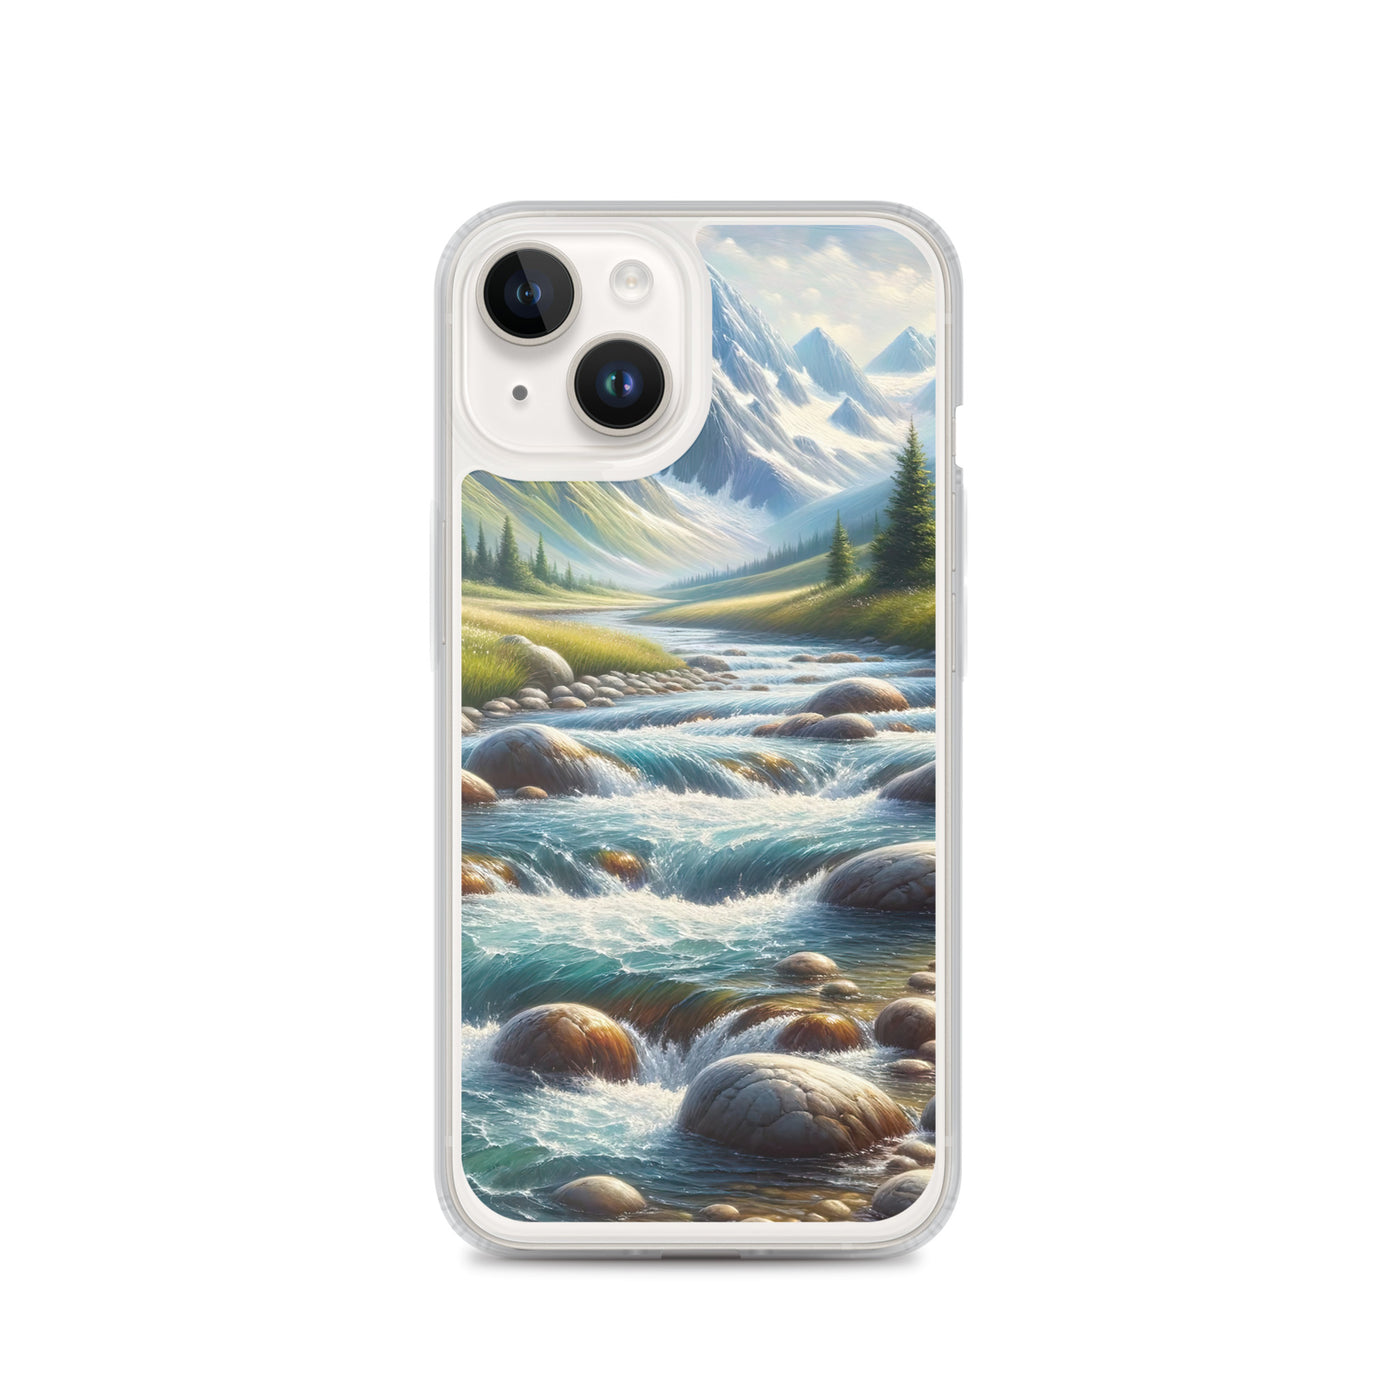 Ölgemälde eines Gebirgsbachs durch felsige Landschaft - iPhone Schutzhülle (durchsichtig) berge xxx yyy zzz iPhone 14